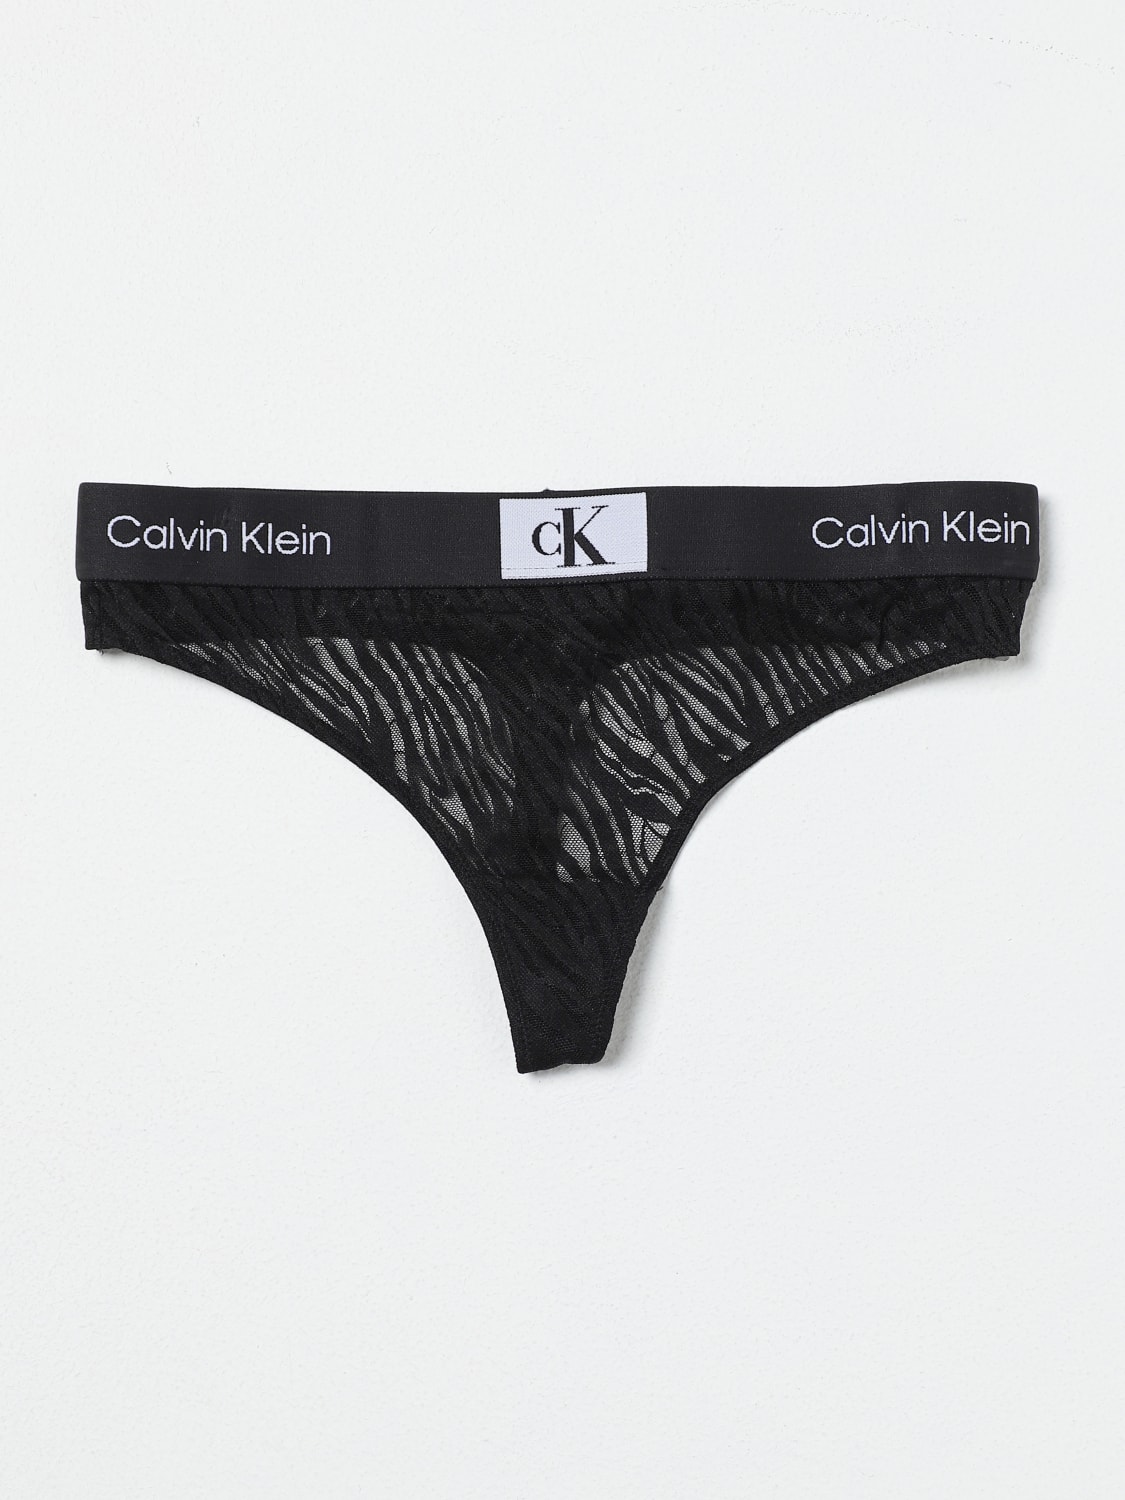 CALVIN KLEIN UNDERWEAR: Dessous damen Ck Underwear - Schwarz  CALVIN KLEIN  UNDERWEAR Dessous 000QF7378E online auf